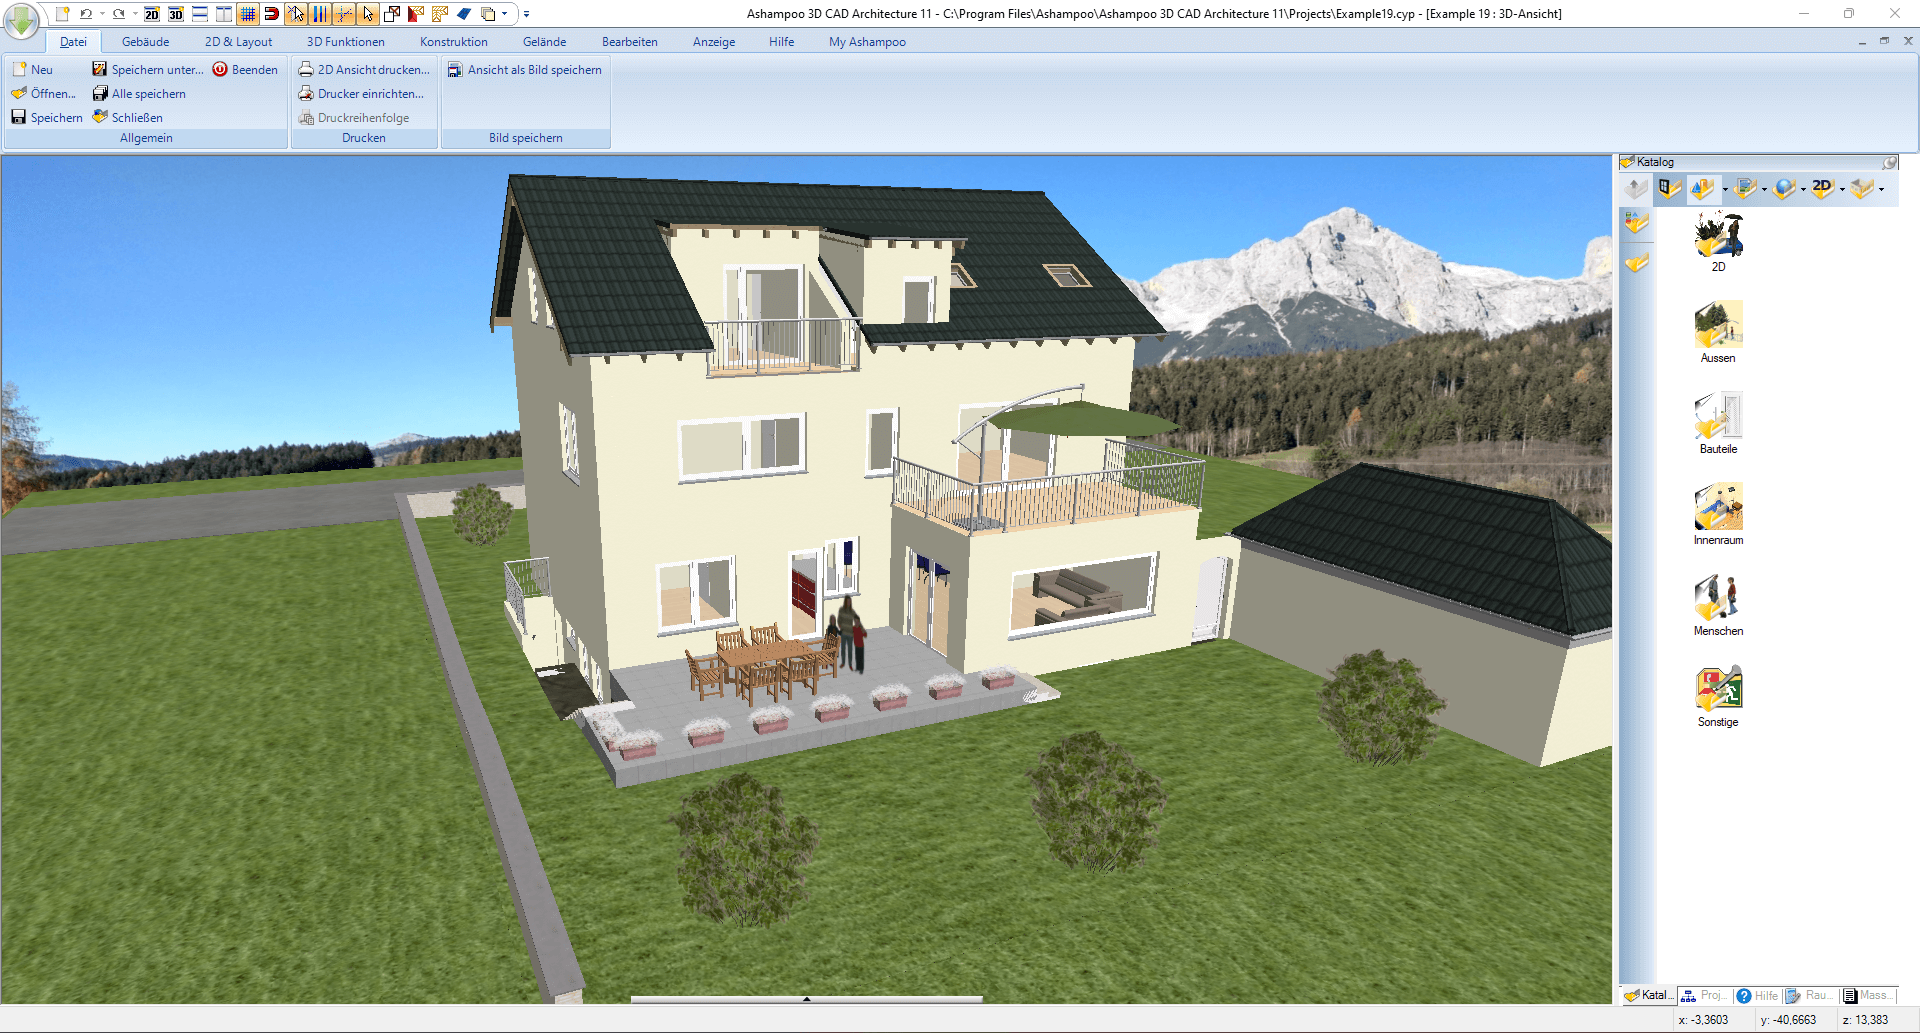 Ashampoo 3D CAD Architecture 11 - Haus 